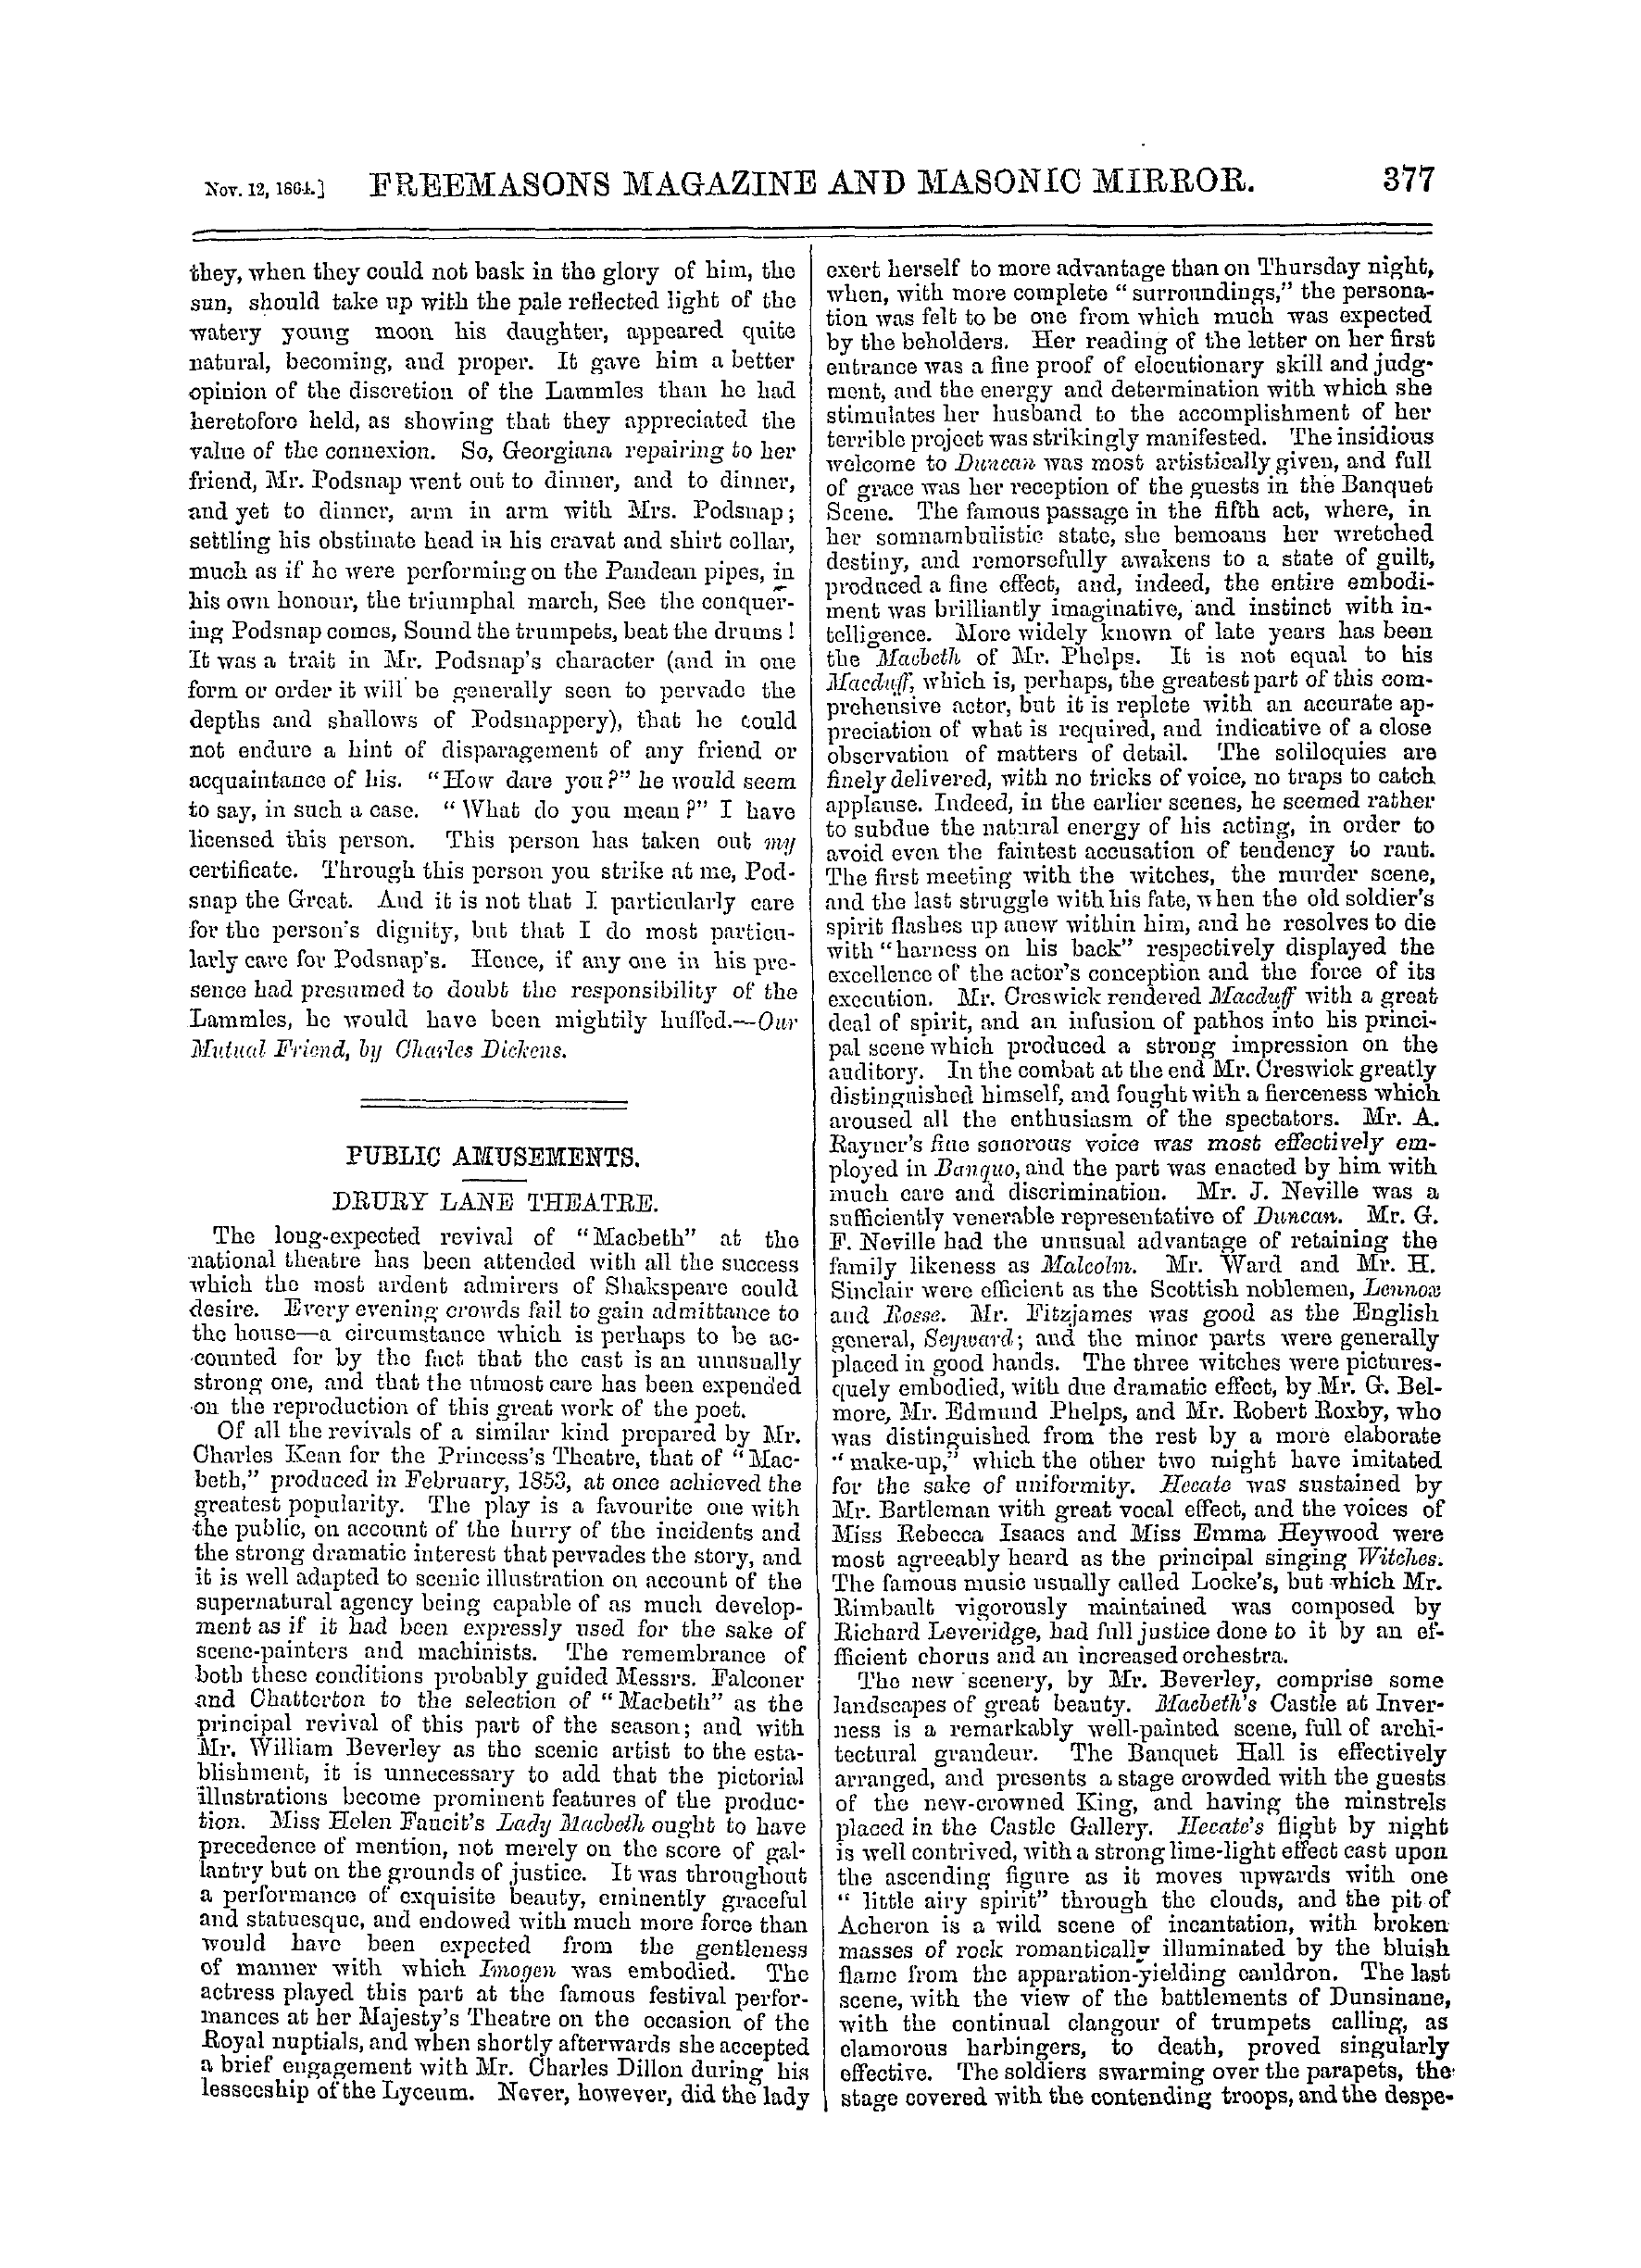 The Freemasons' Monthly Magazine: 1864-11-12: 17